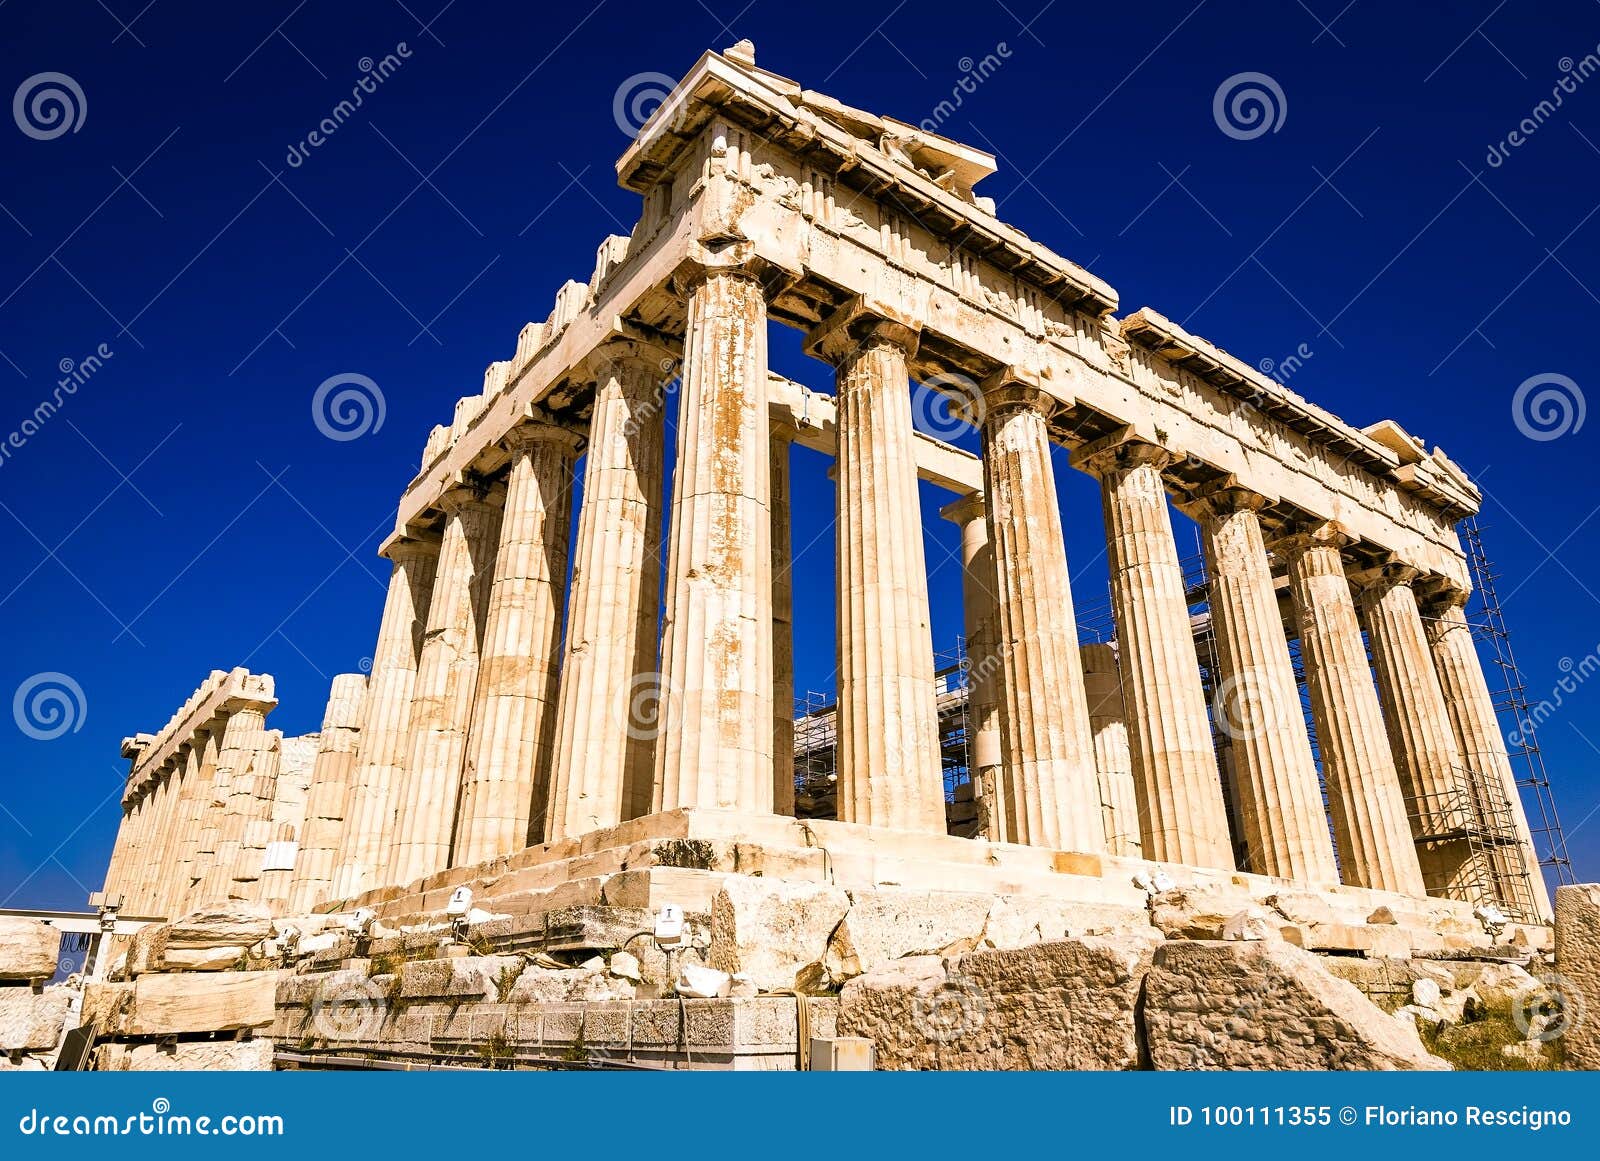 The Parthenon On The Athenian Acropolis, Greece Stock ...
